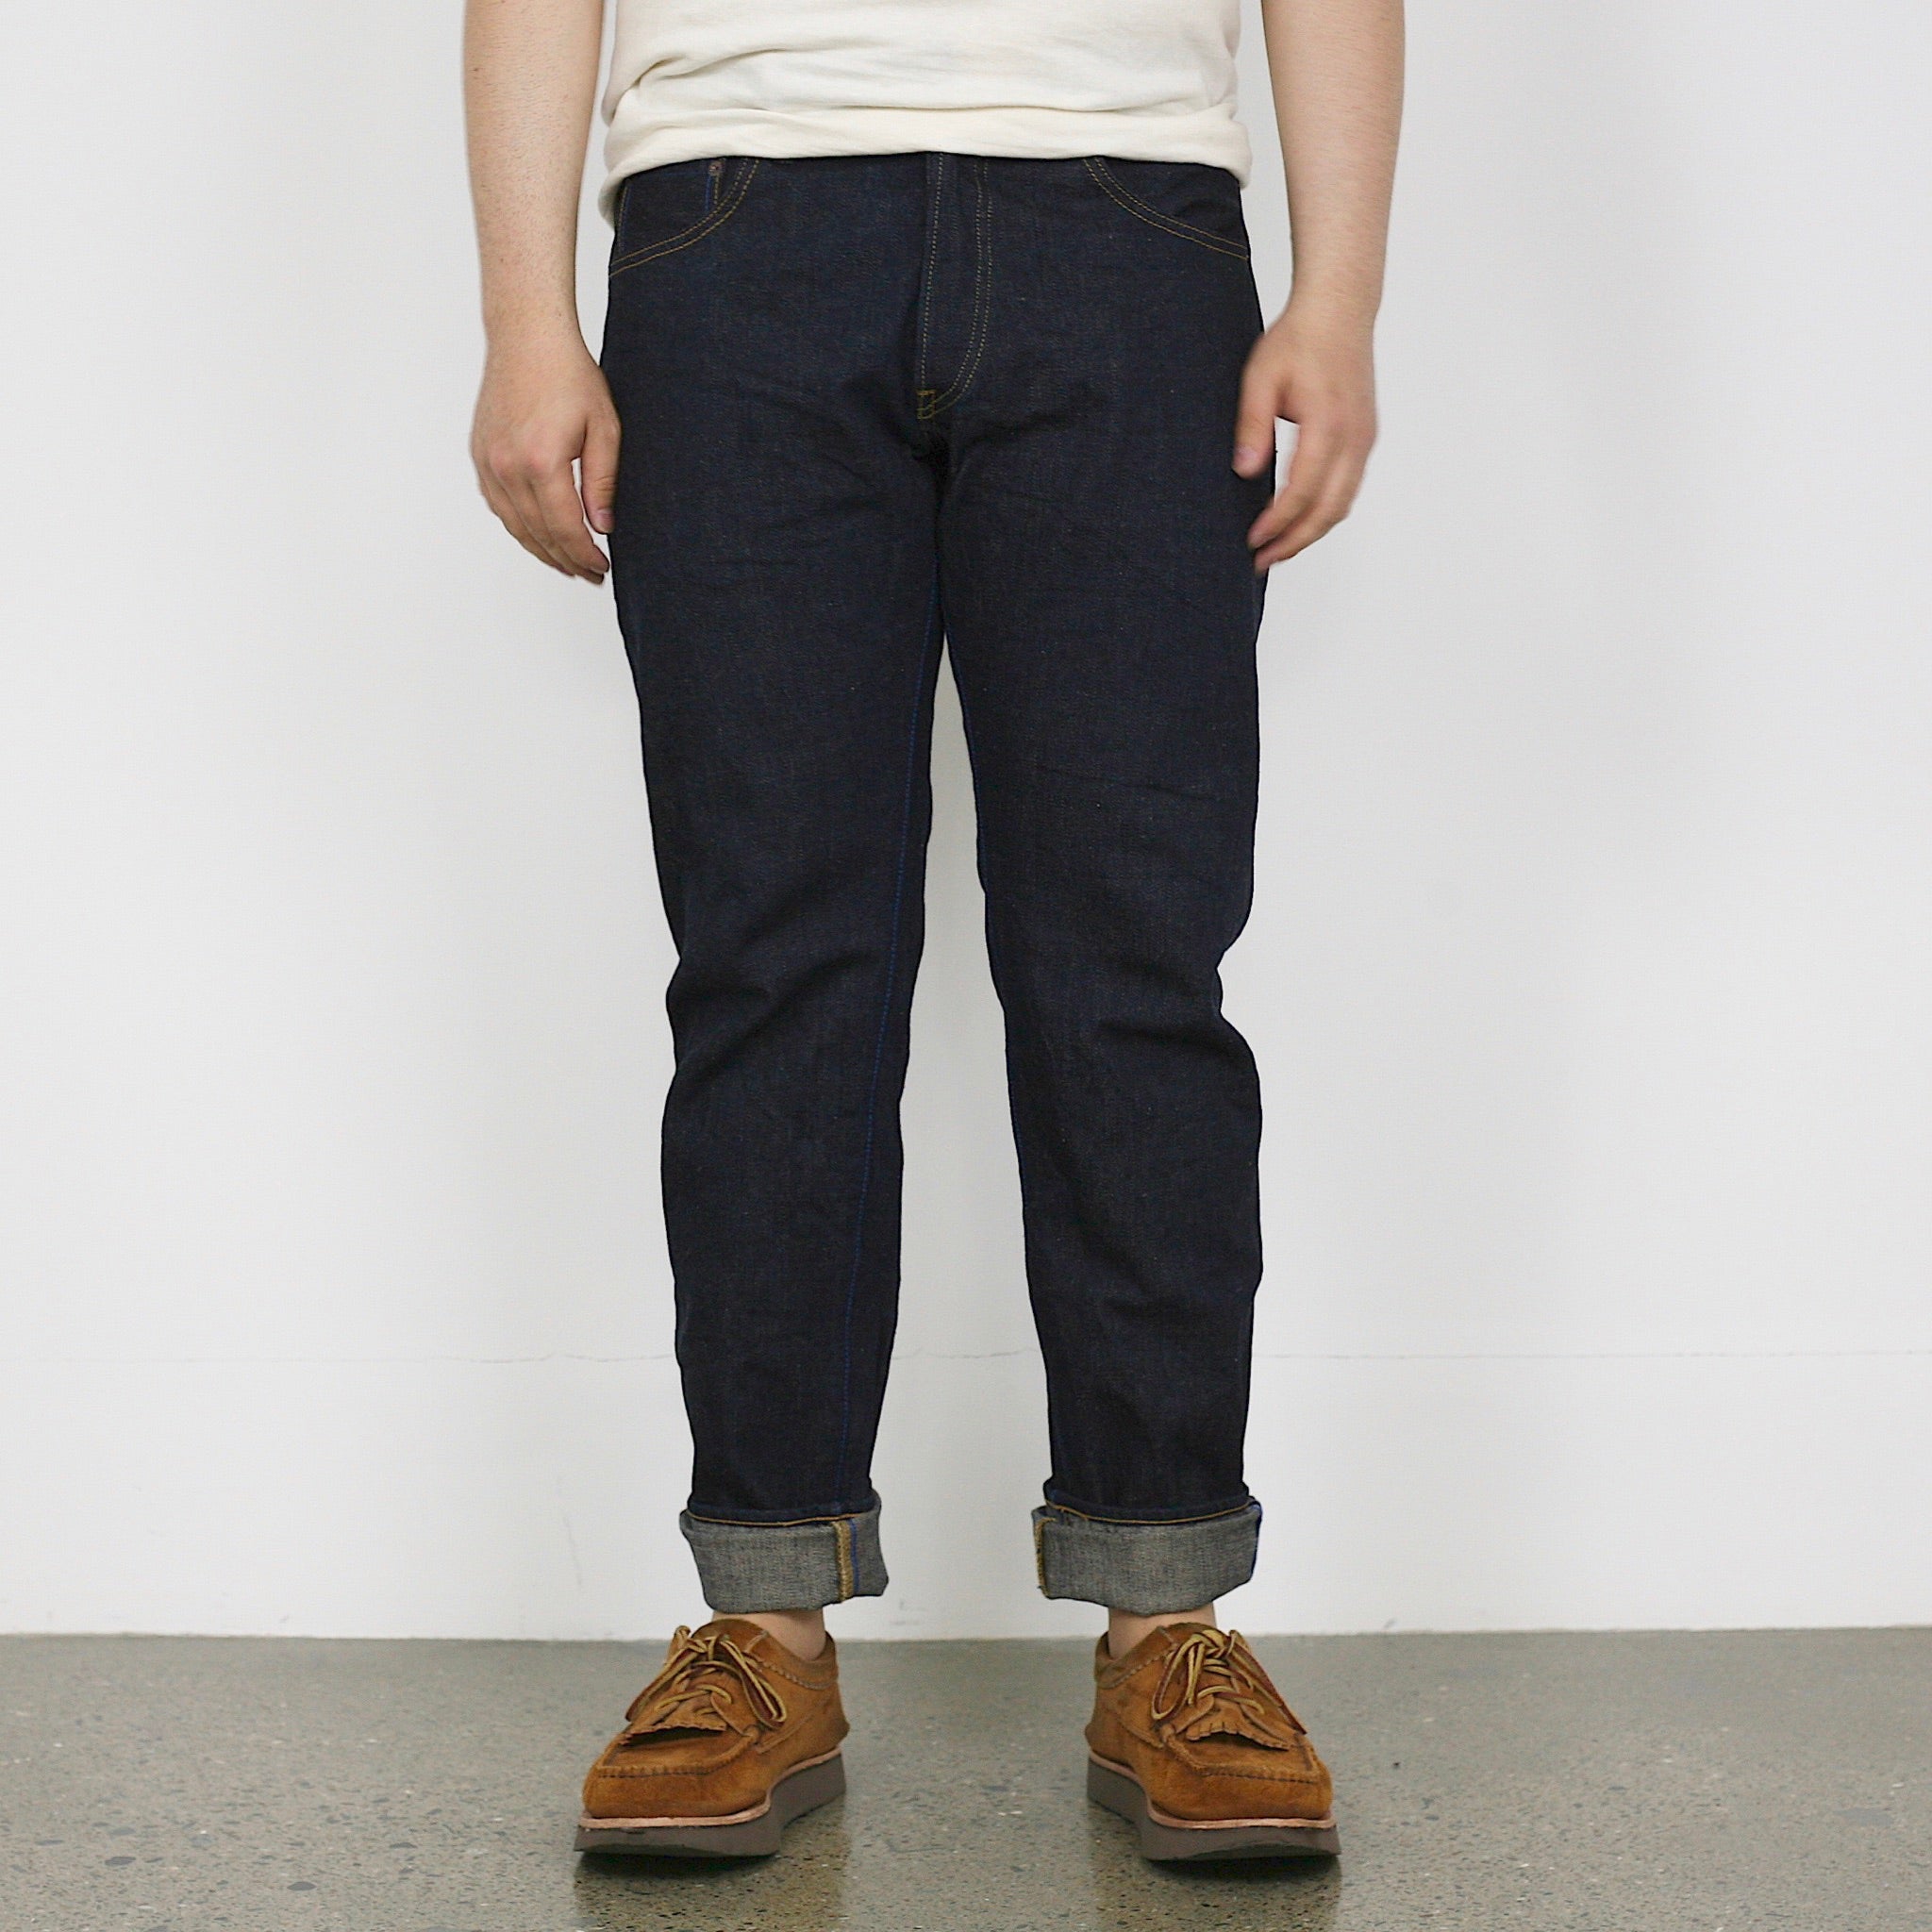 Momotaro Jeans - 0605-V - Natural Tapered - 15.7oz Vintage Indigo –  Division Road, Inc.